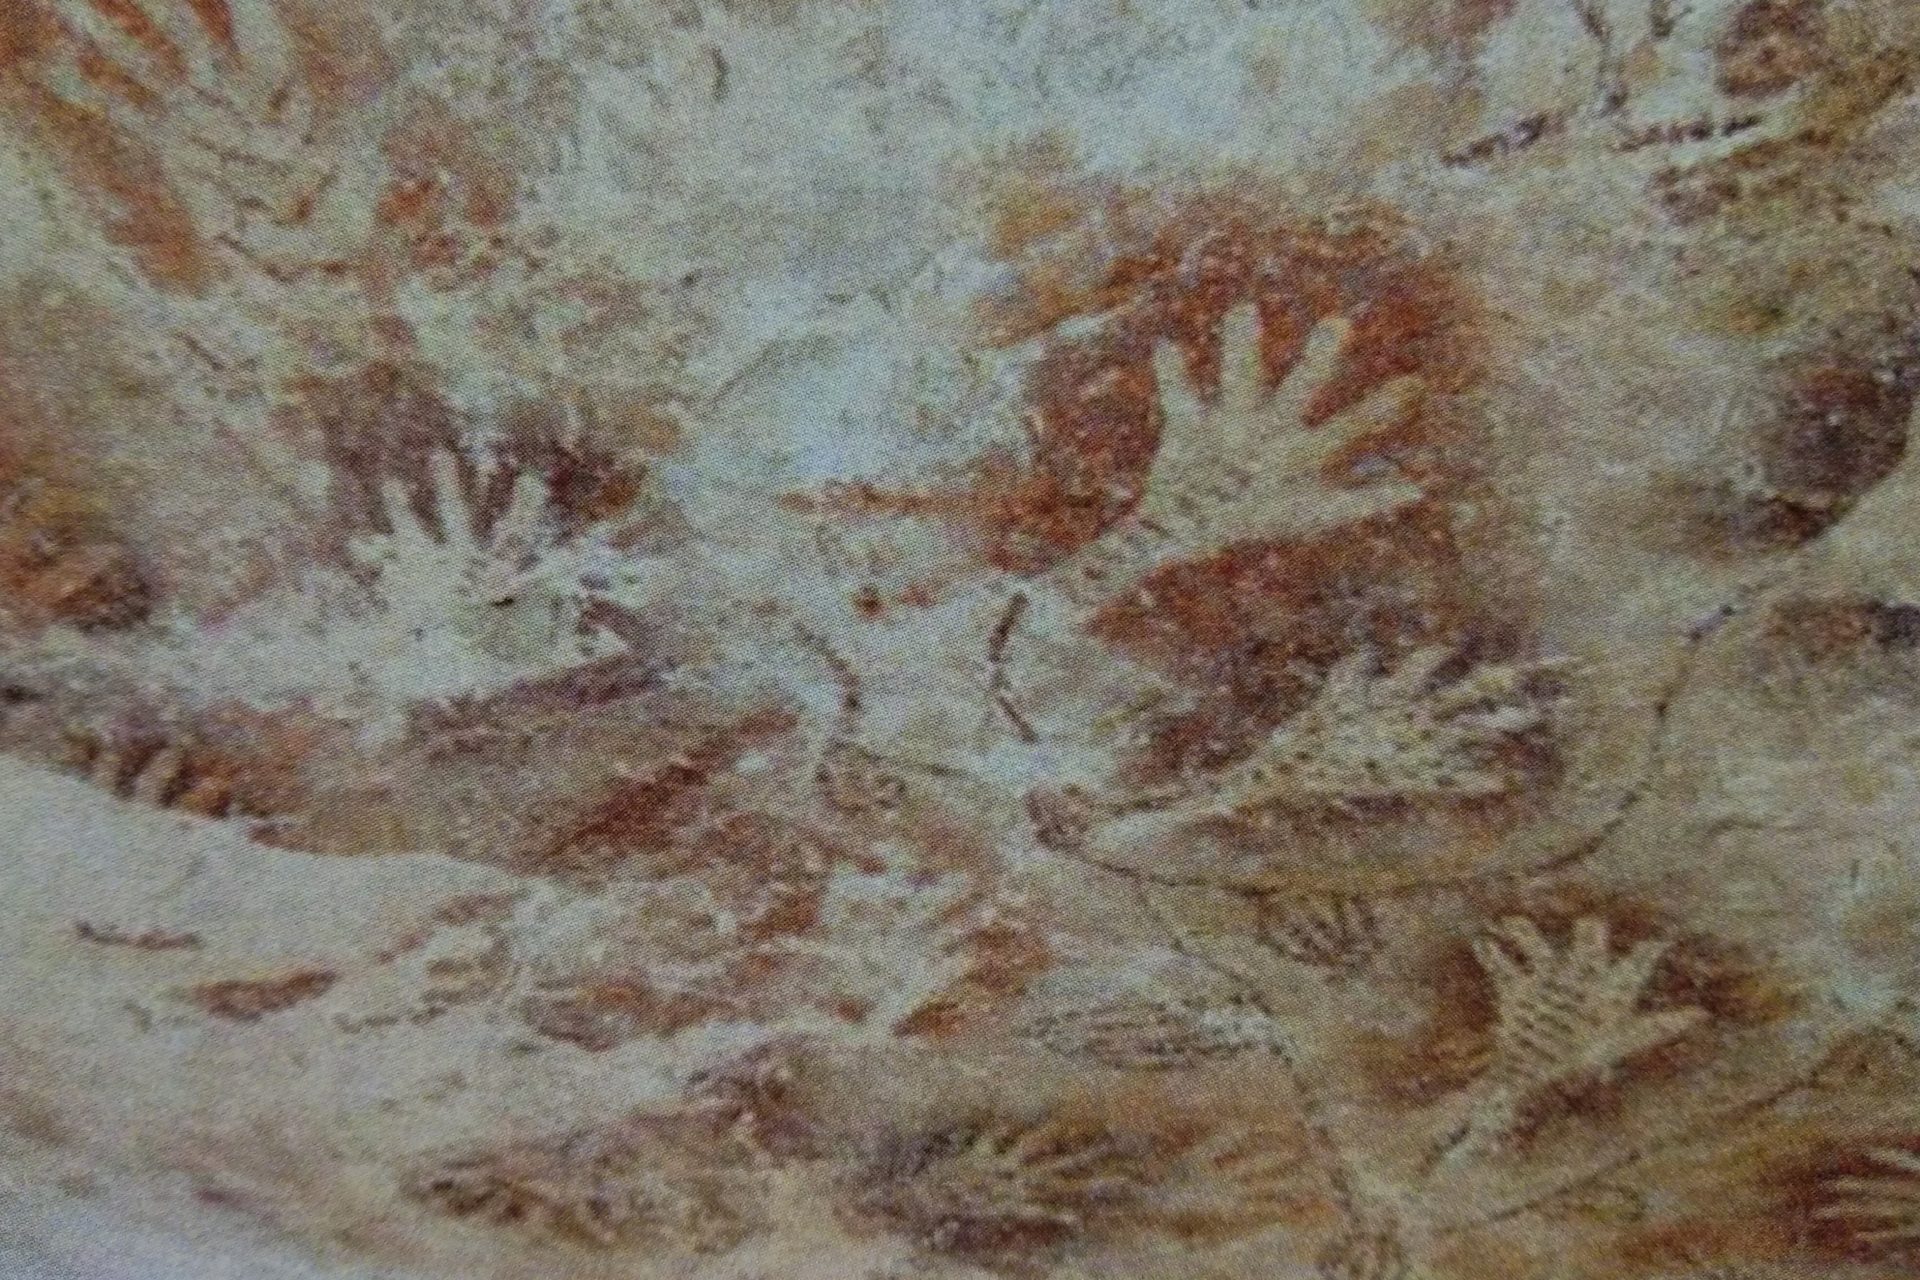 L'art rupestre préhistorique offre des informations précieuses